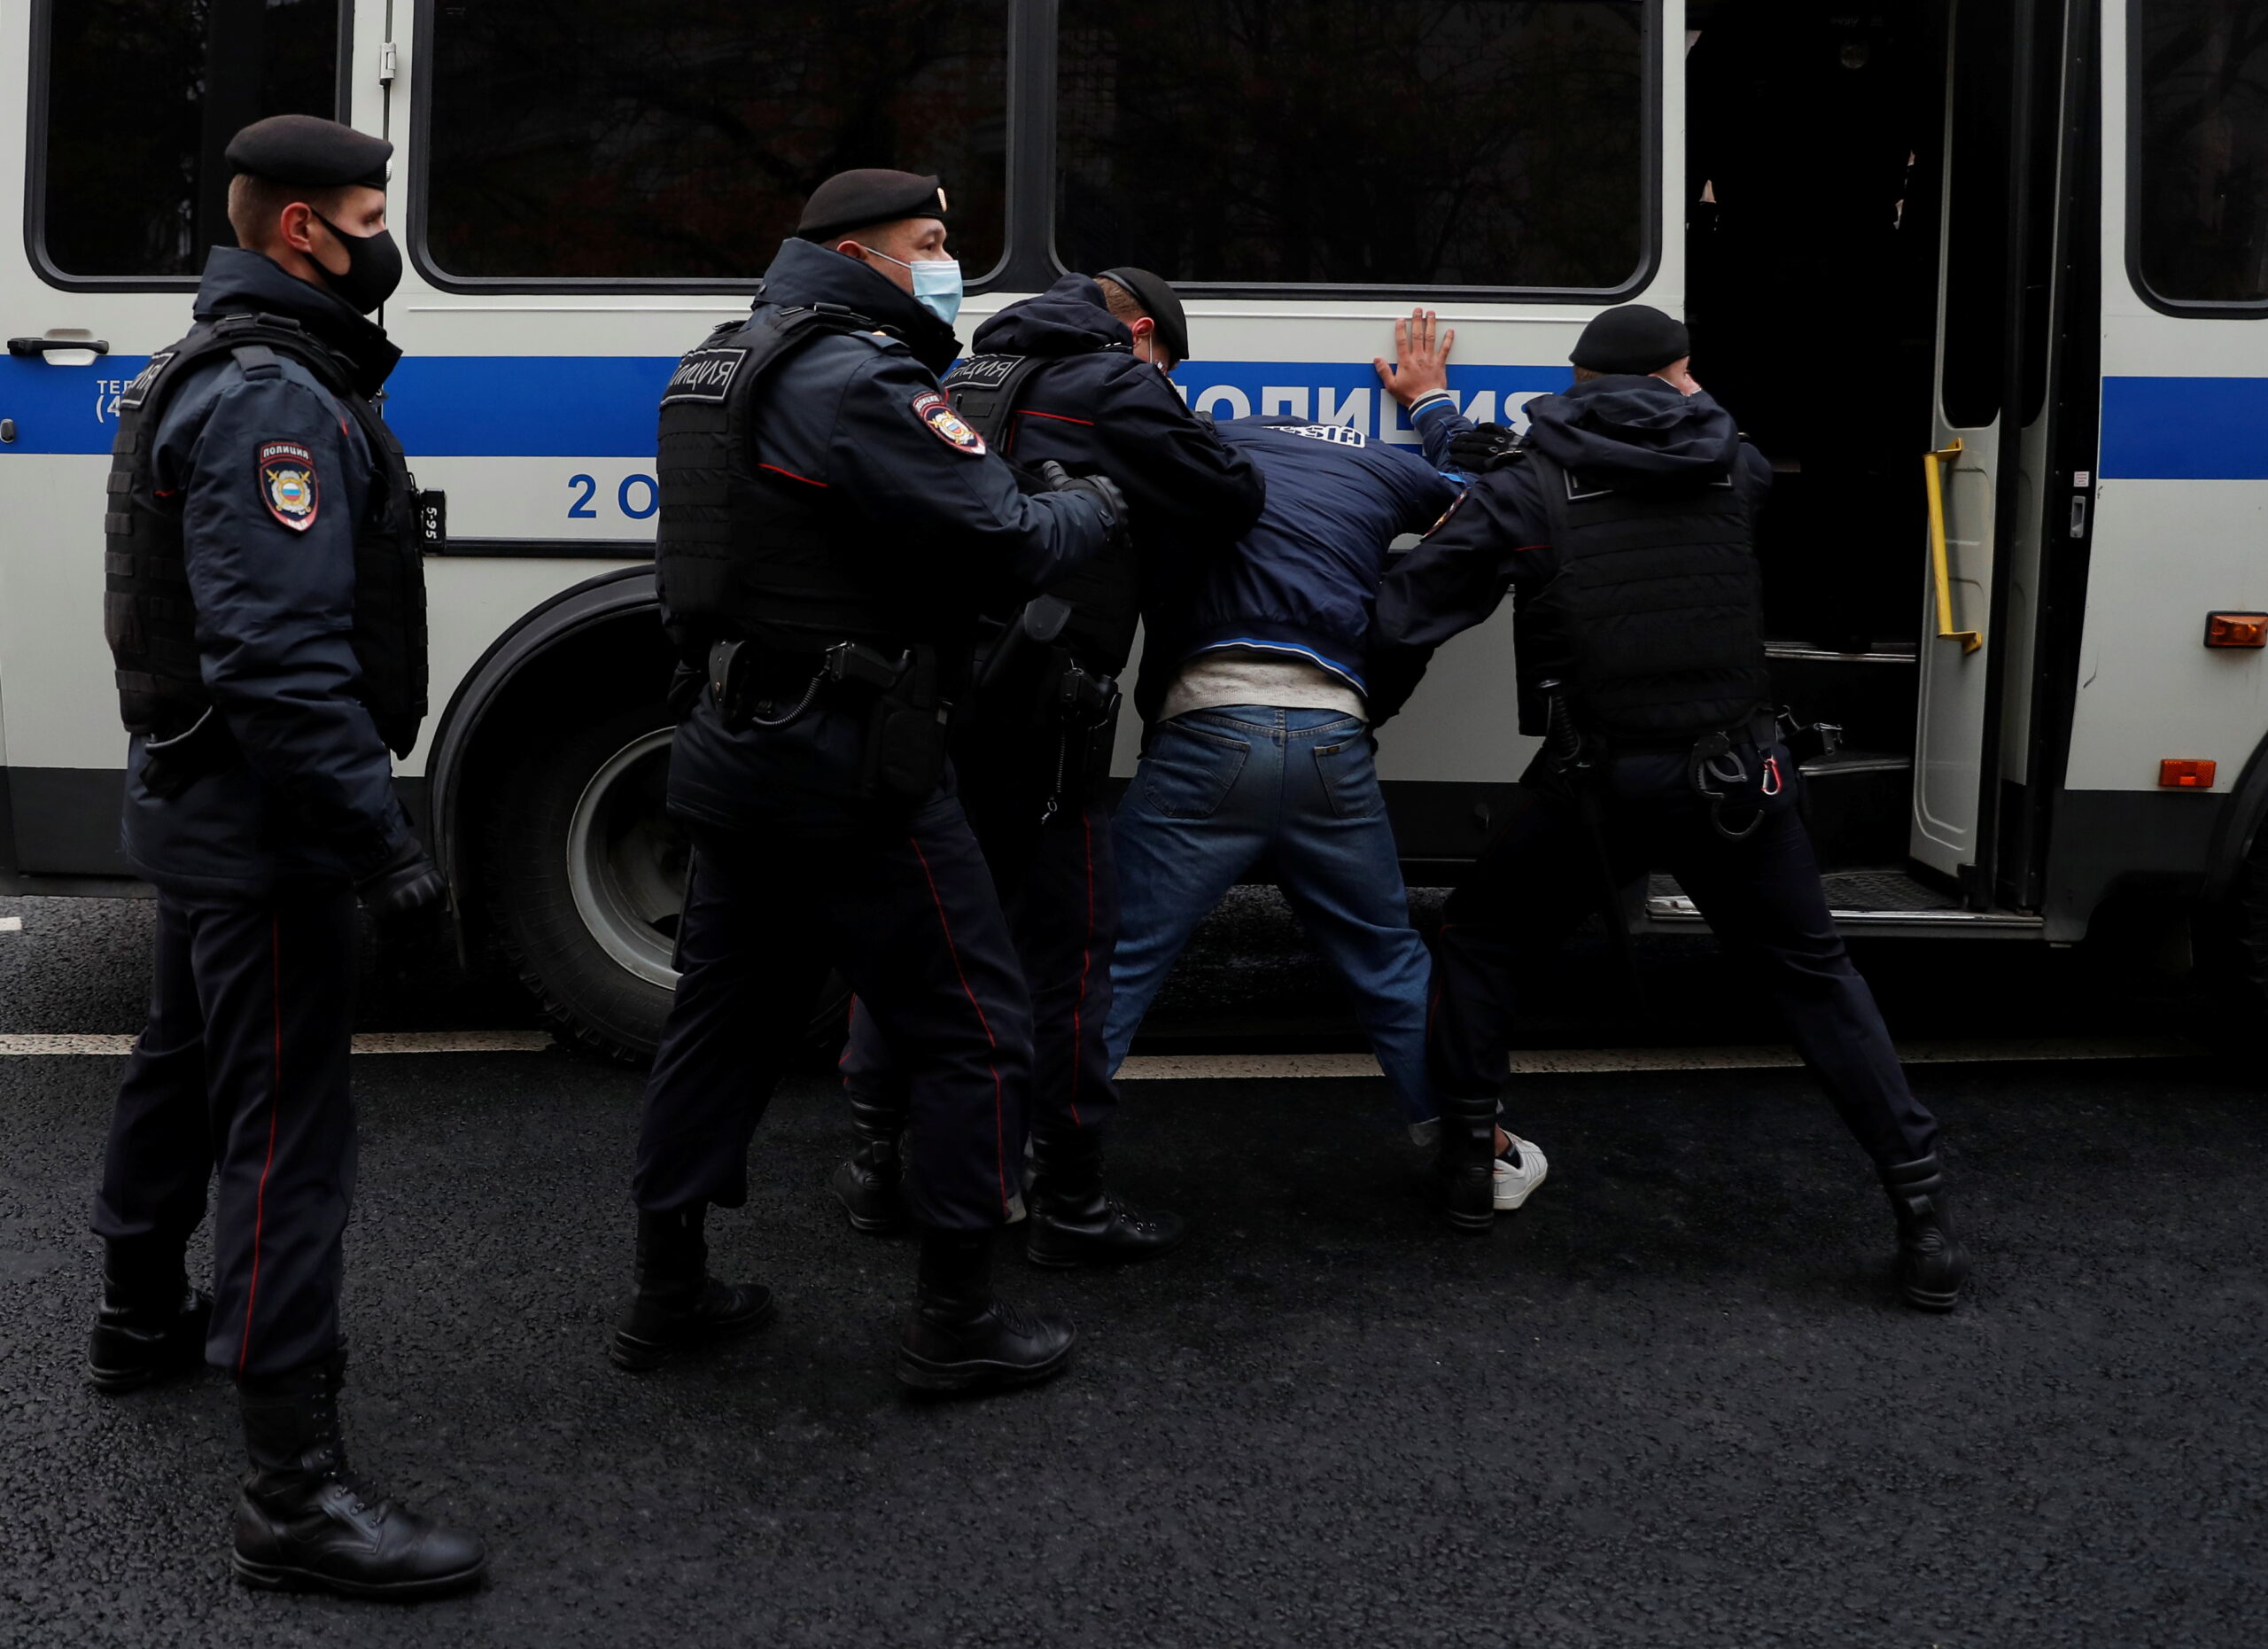 Задержание на пятничной акции. Очевидцы утверждают, что силовики действовали достаточно жестко. Фото REUTERS/Evgenia Novozhenina/Scanpix/Leta